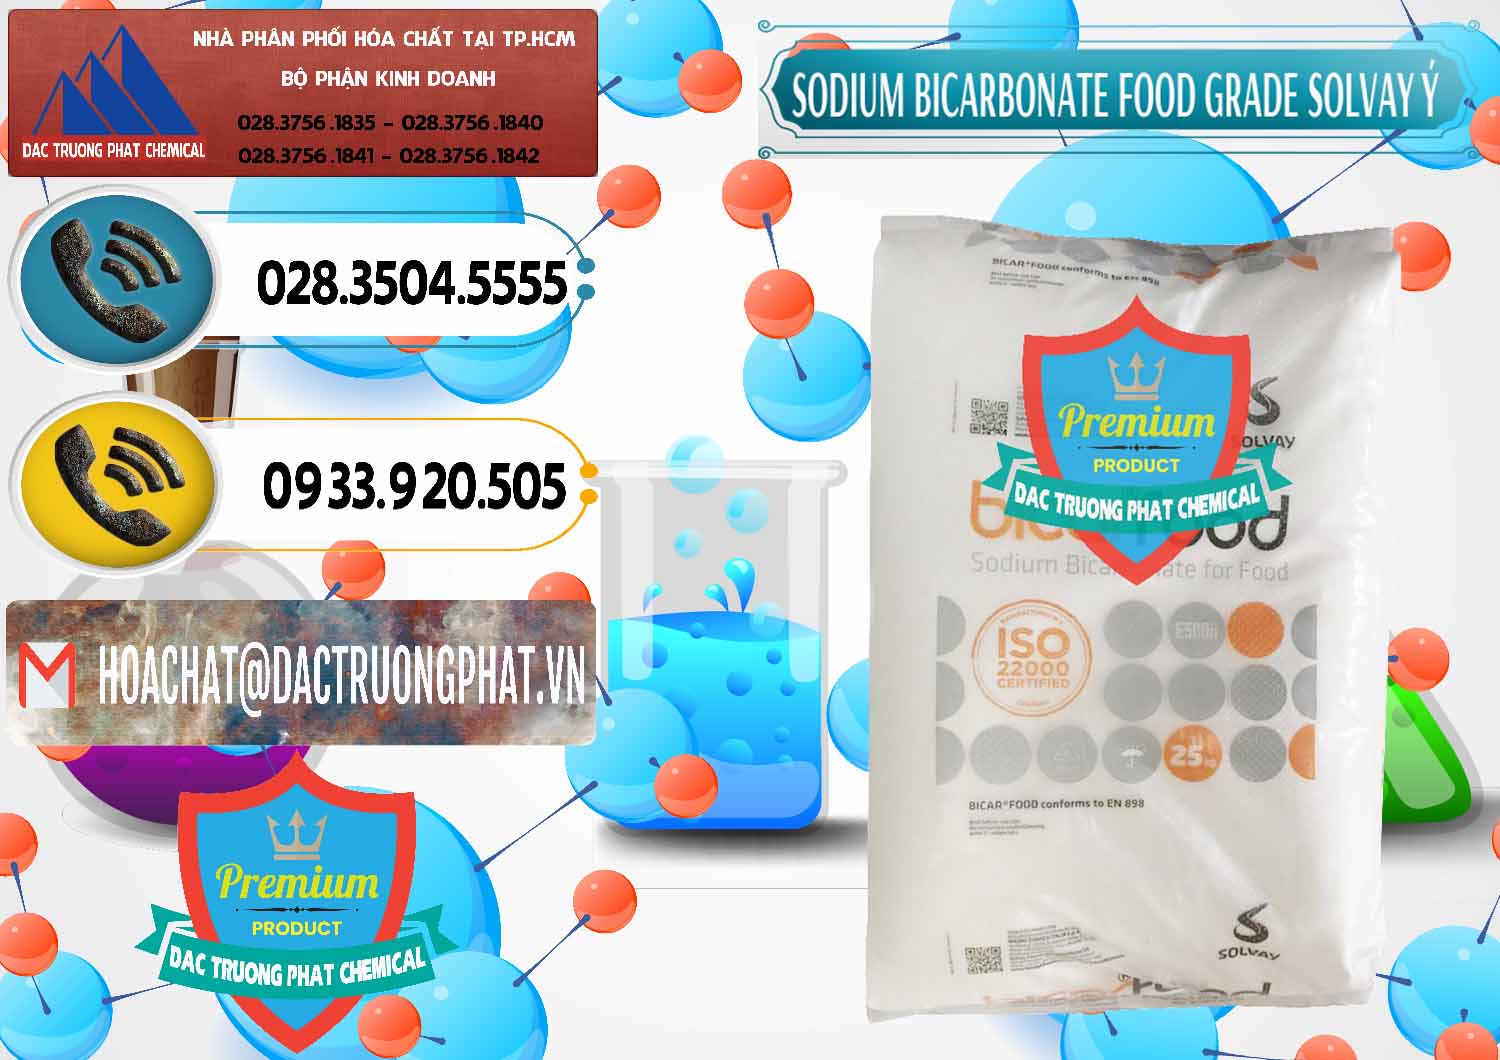 Nơi chuyên cung cấp - bán Sodium Bicarbonate – Bicar NaHCO3 Food Grade Solvay Ý Italy - 0220 - Cty phân phối và nhập khẩu hóa chất tại TP.HCM - hoachatdetnhuom.vn